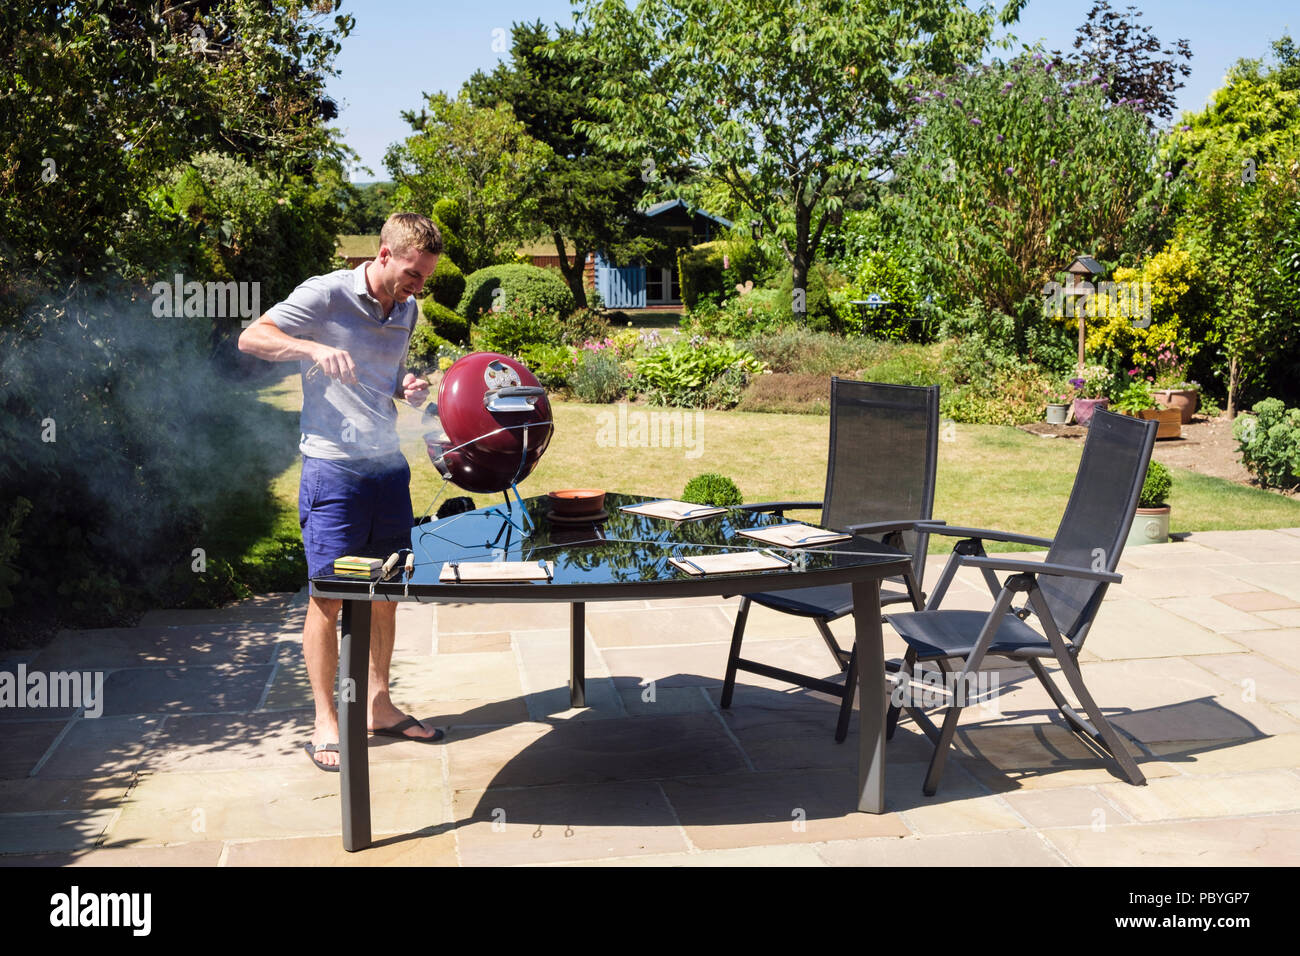 Imagen auténtica de un joven milenario cocinando en una barbacoa en una mesa de jardín patio trasero en una temporada de verano caliente de 2018. Inglaterra, Reino Unido, Gran Bretaña Foto de stock